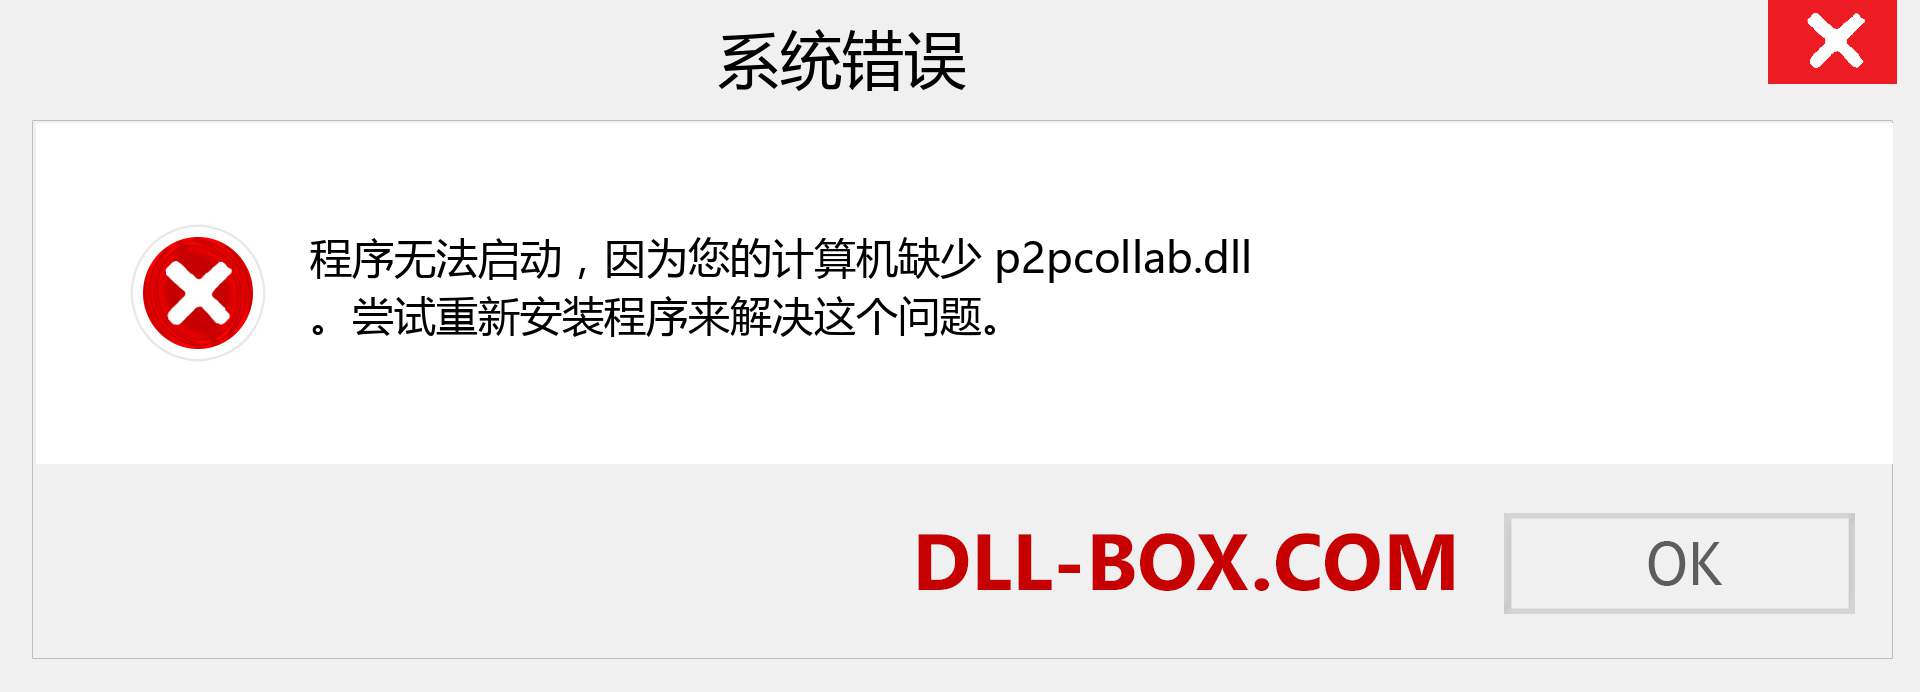 p2pcollab.dll 文件丢失？。 适用于 Windows 7、8、10 的下载 - 修复 Windows、照片、图像上的 p2pcollab dll 丢失错误